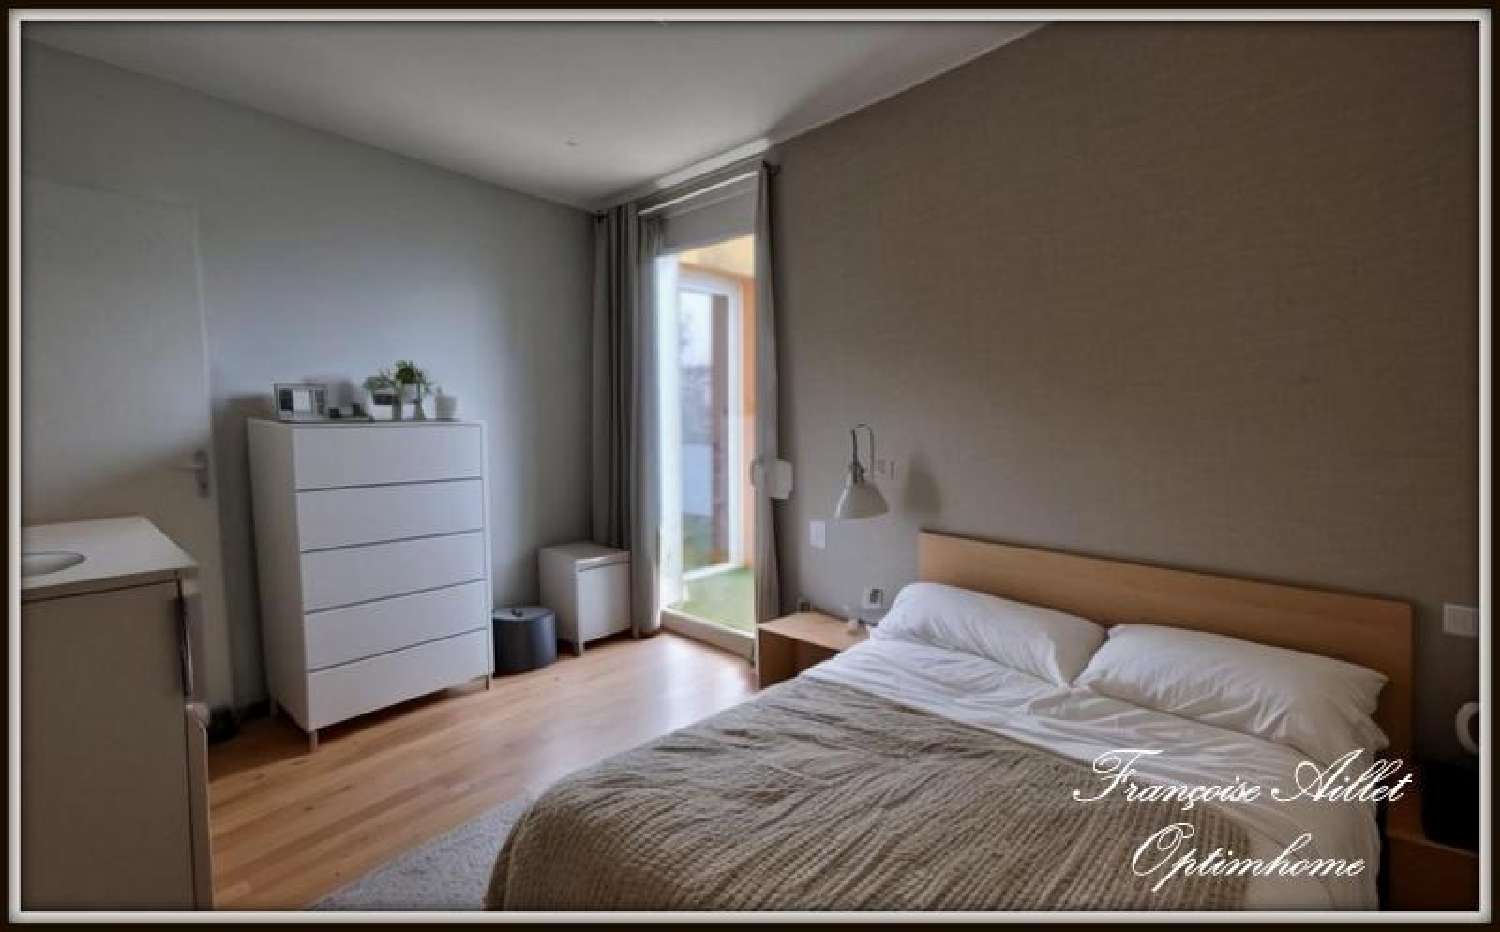  à vendre appartement La Chapelle-sur-Erdre Loire-Atlantique 3